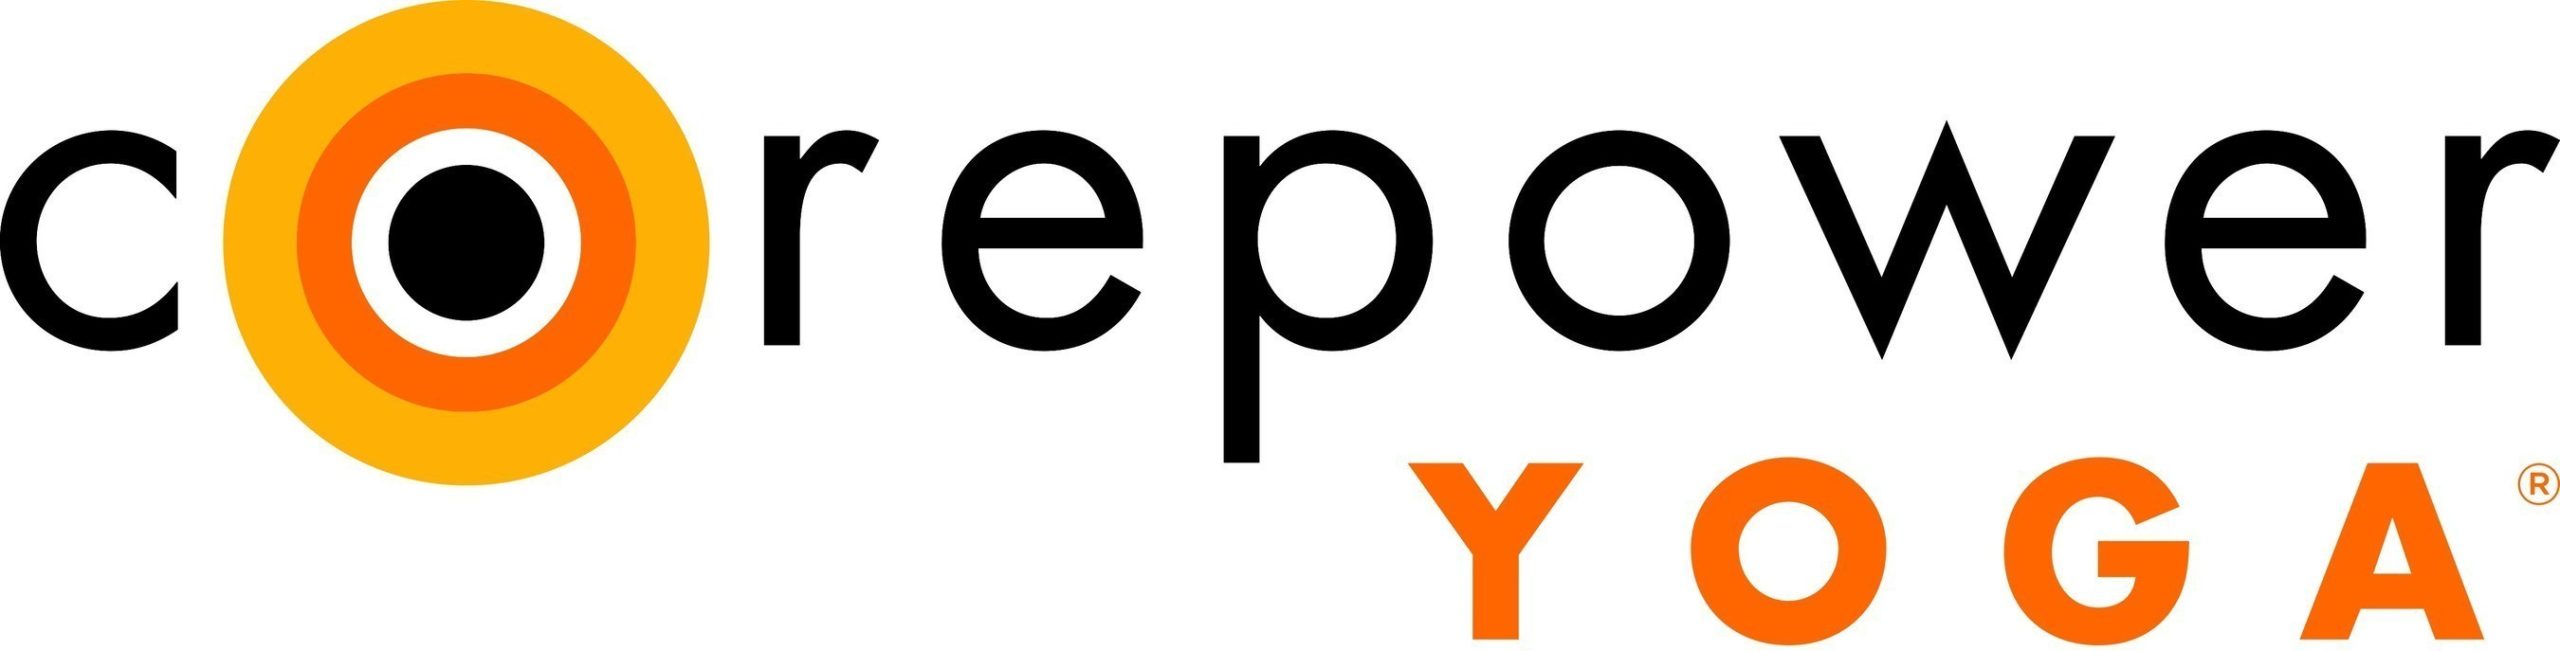 Logotipo de CorePower Yoga